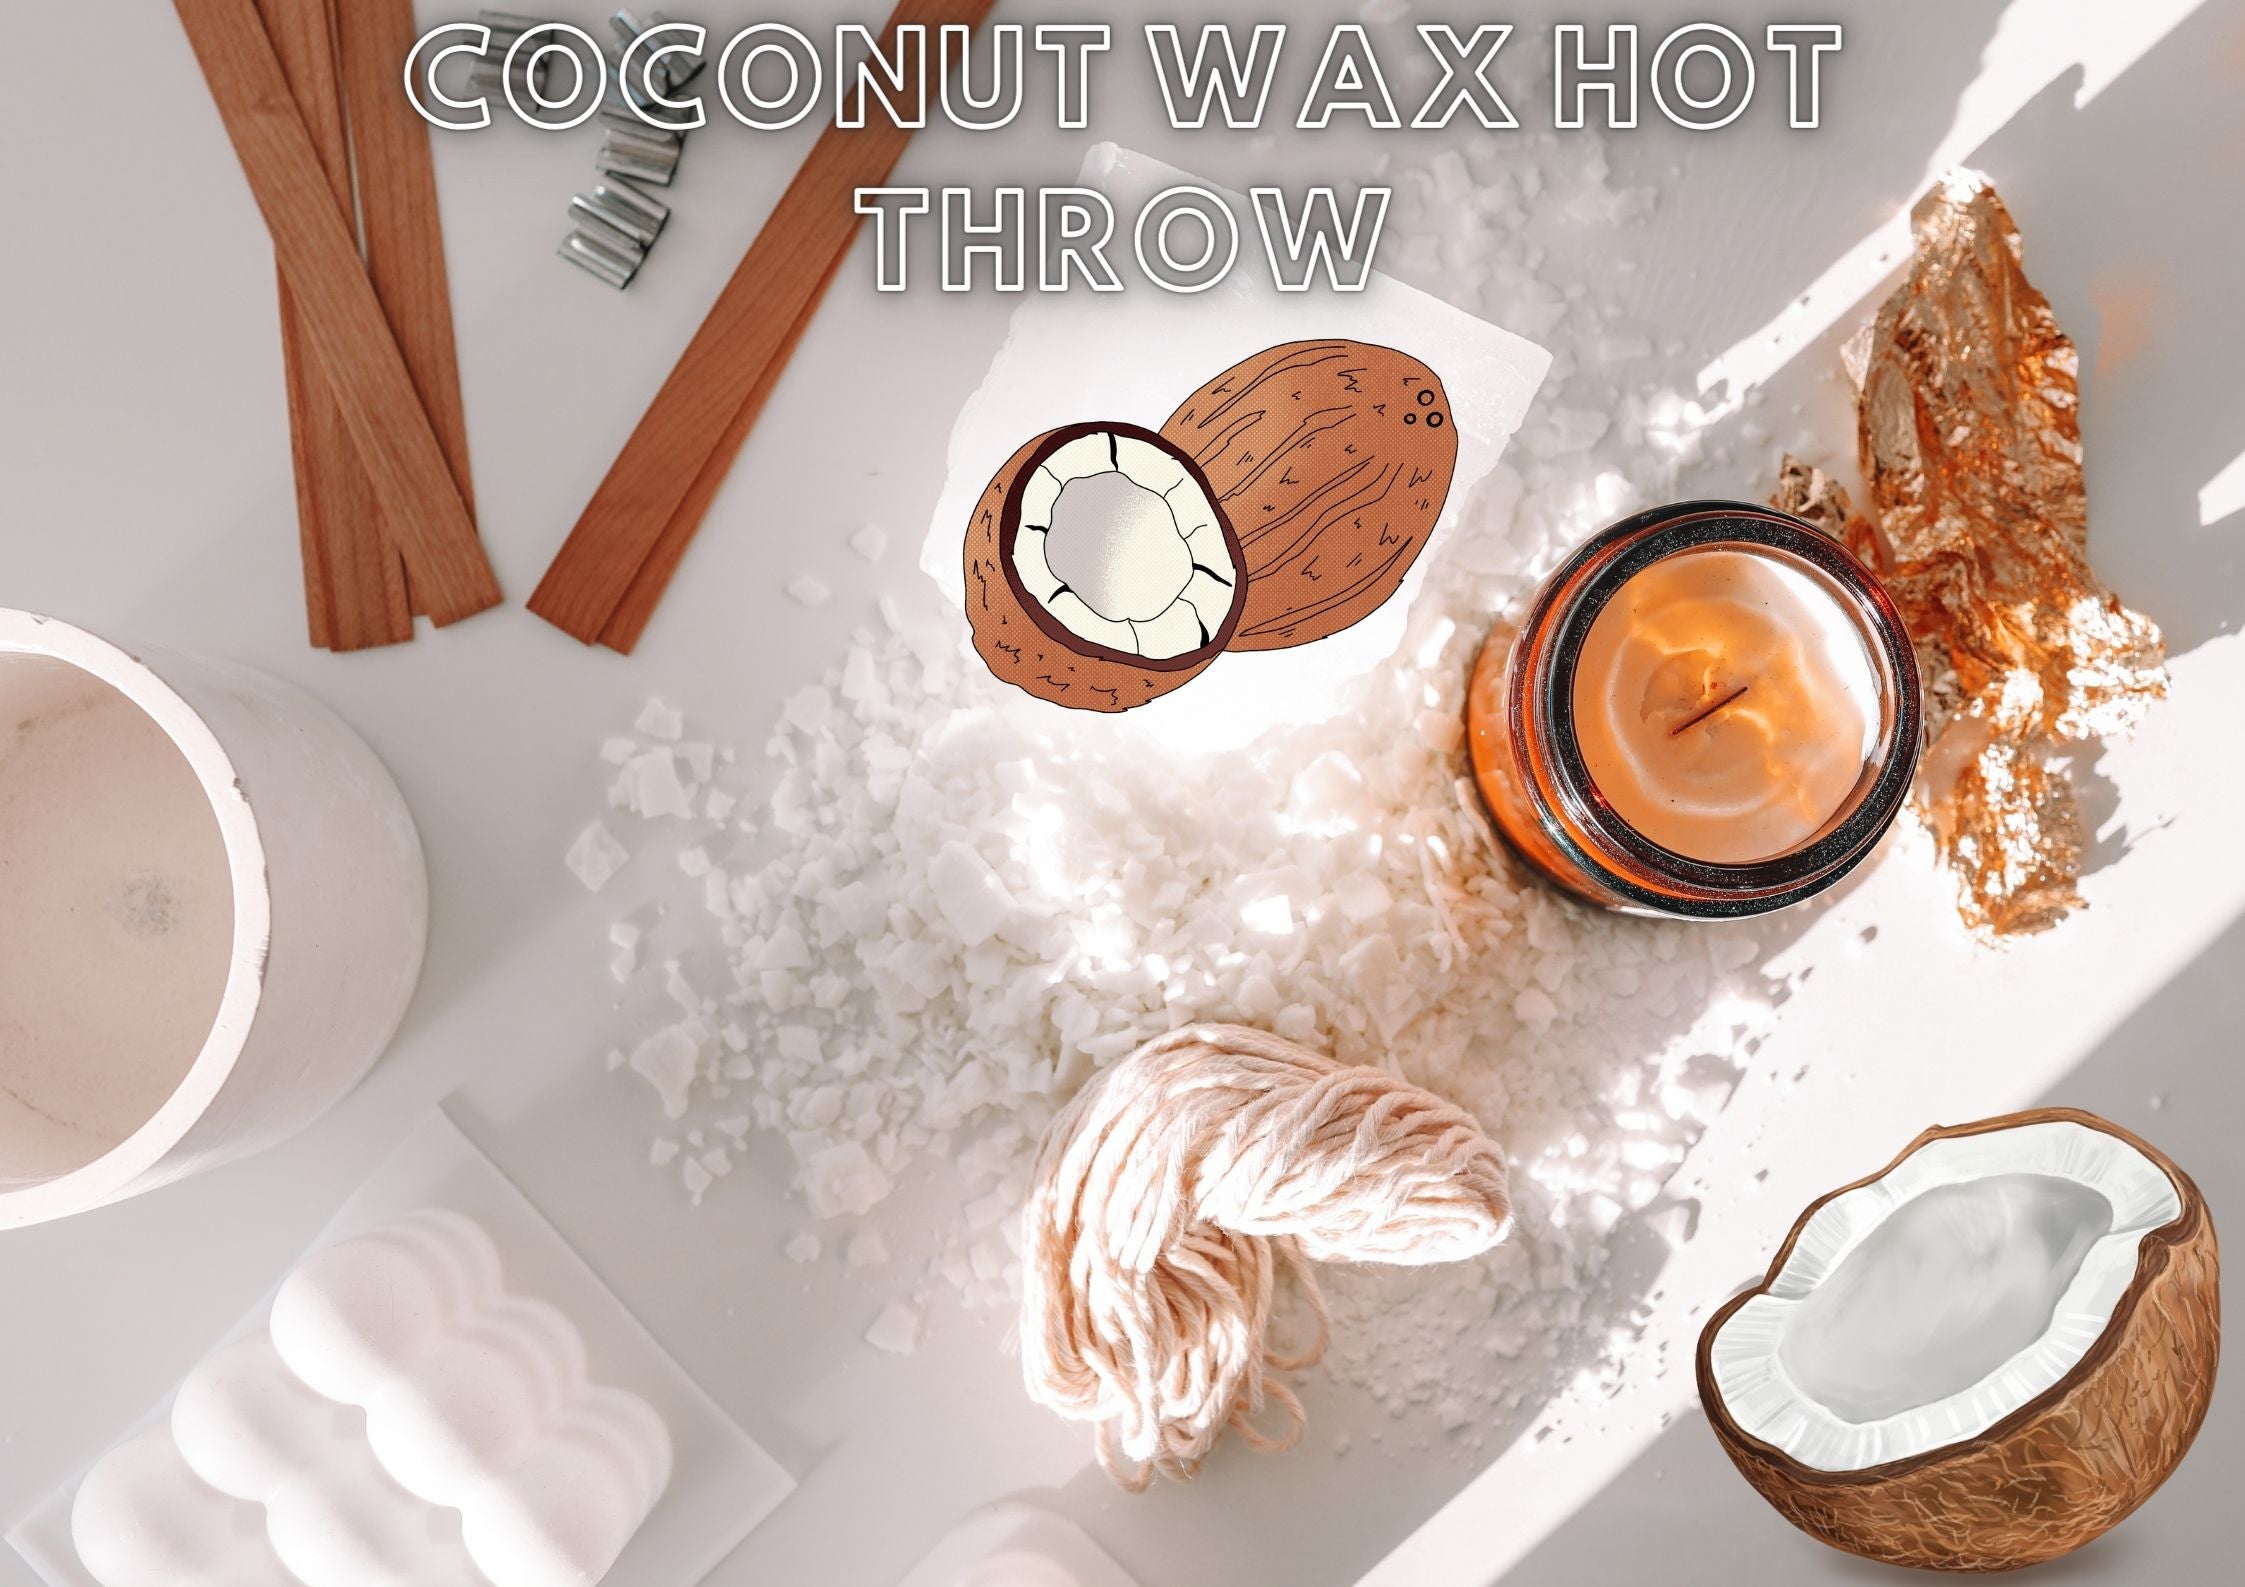 Coconut wax hot throw